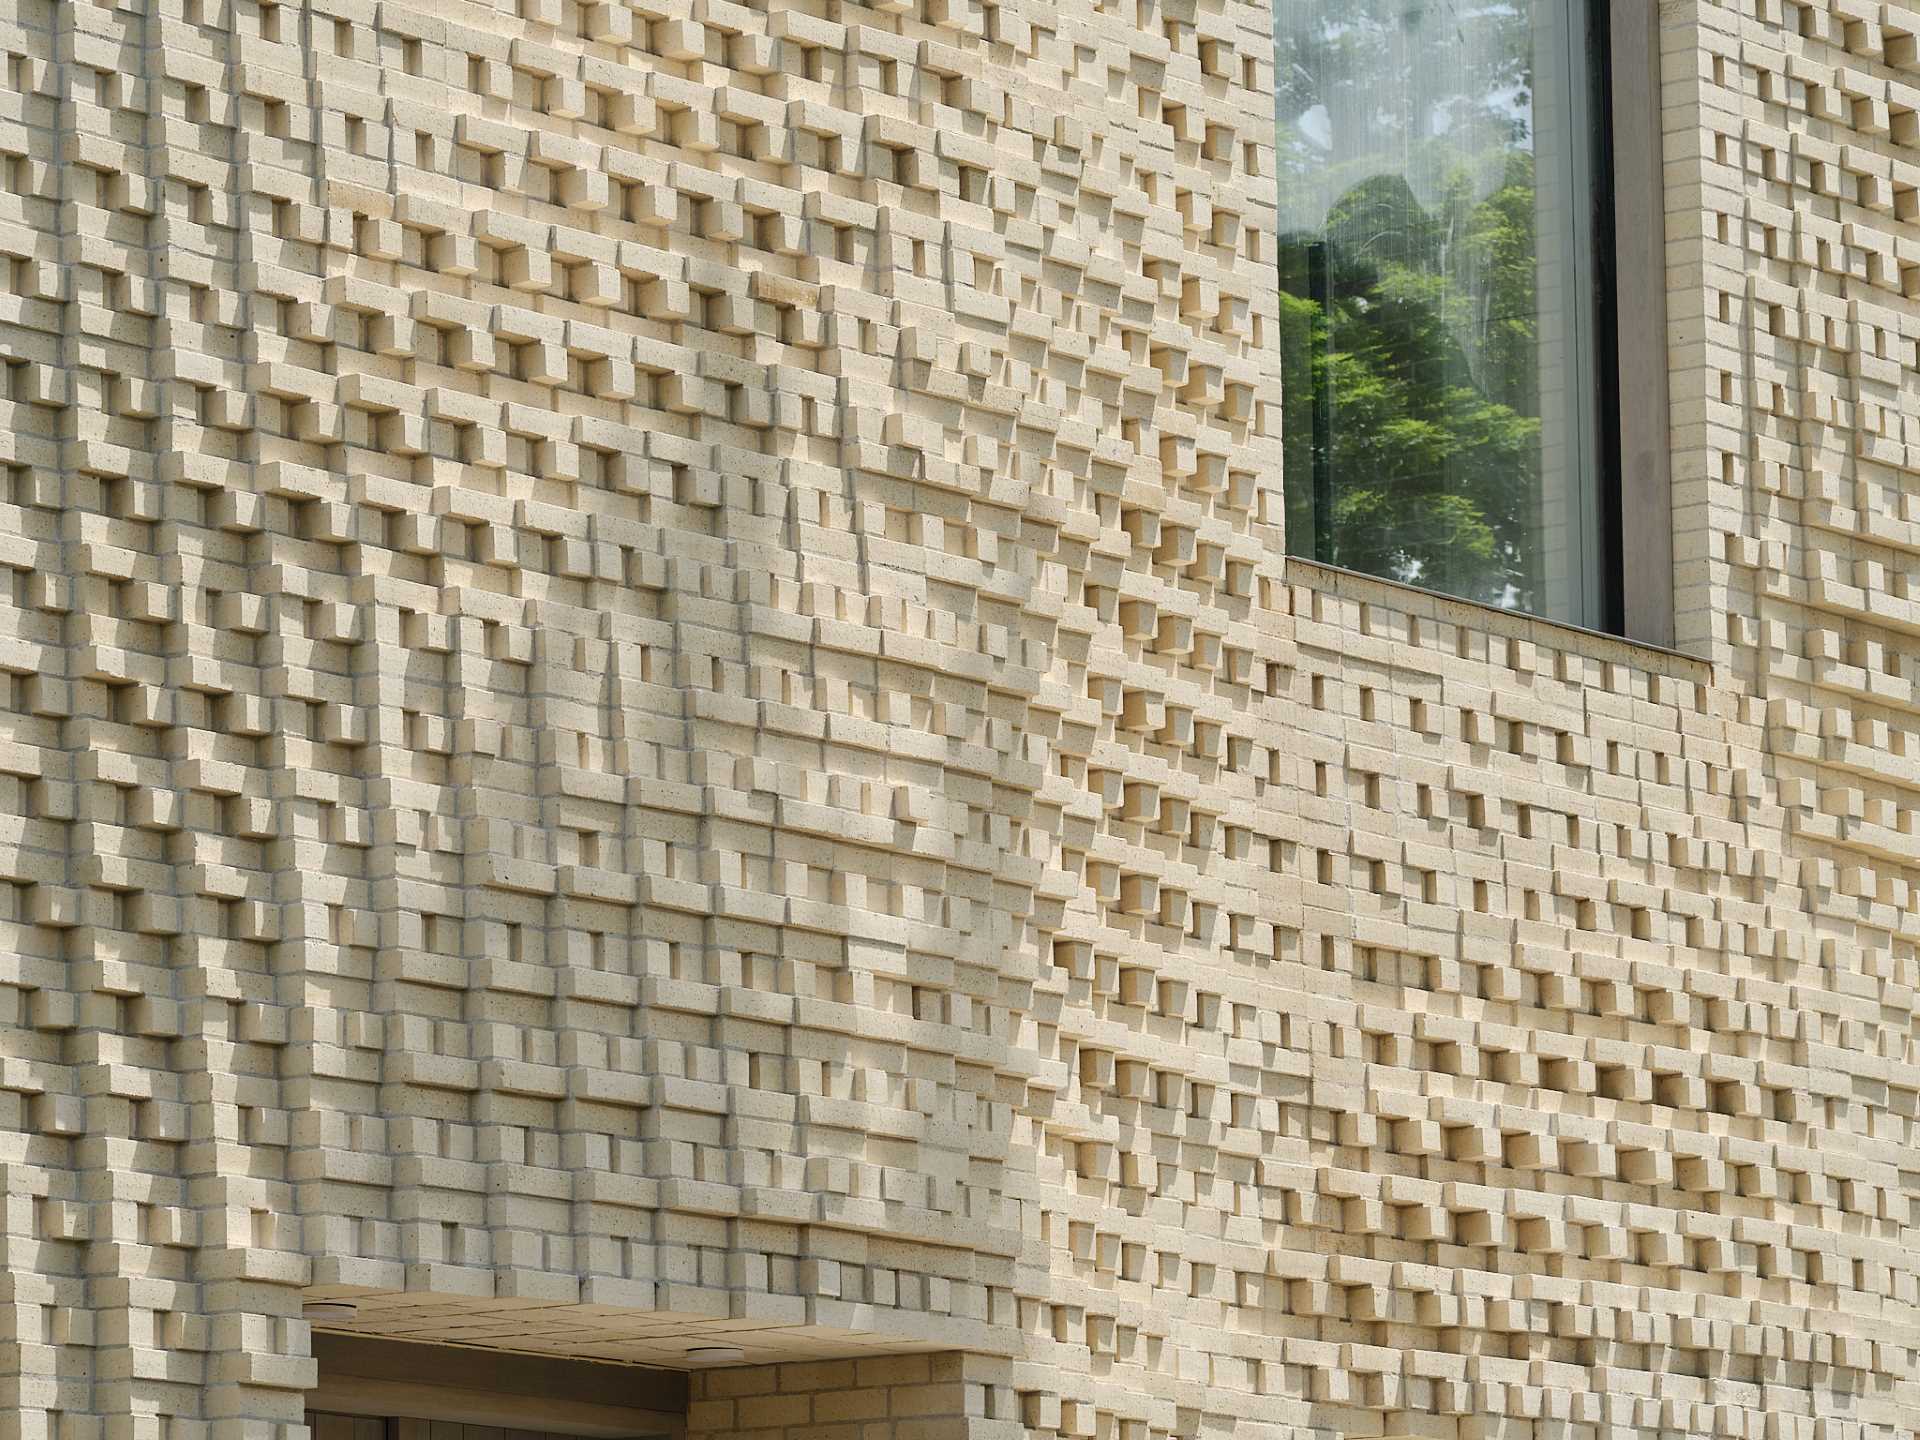 A sculptural brick facade for a single-family home in Toronto, Canada.